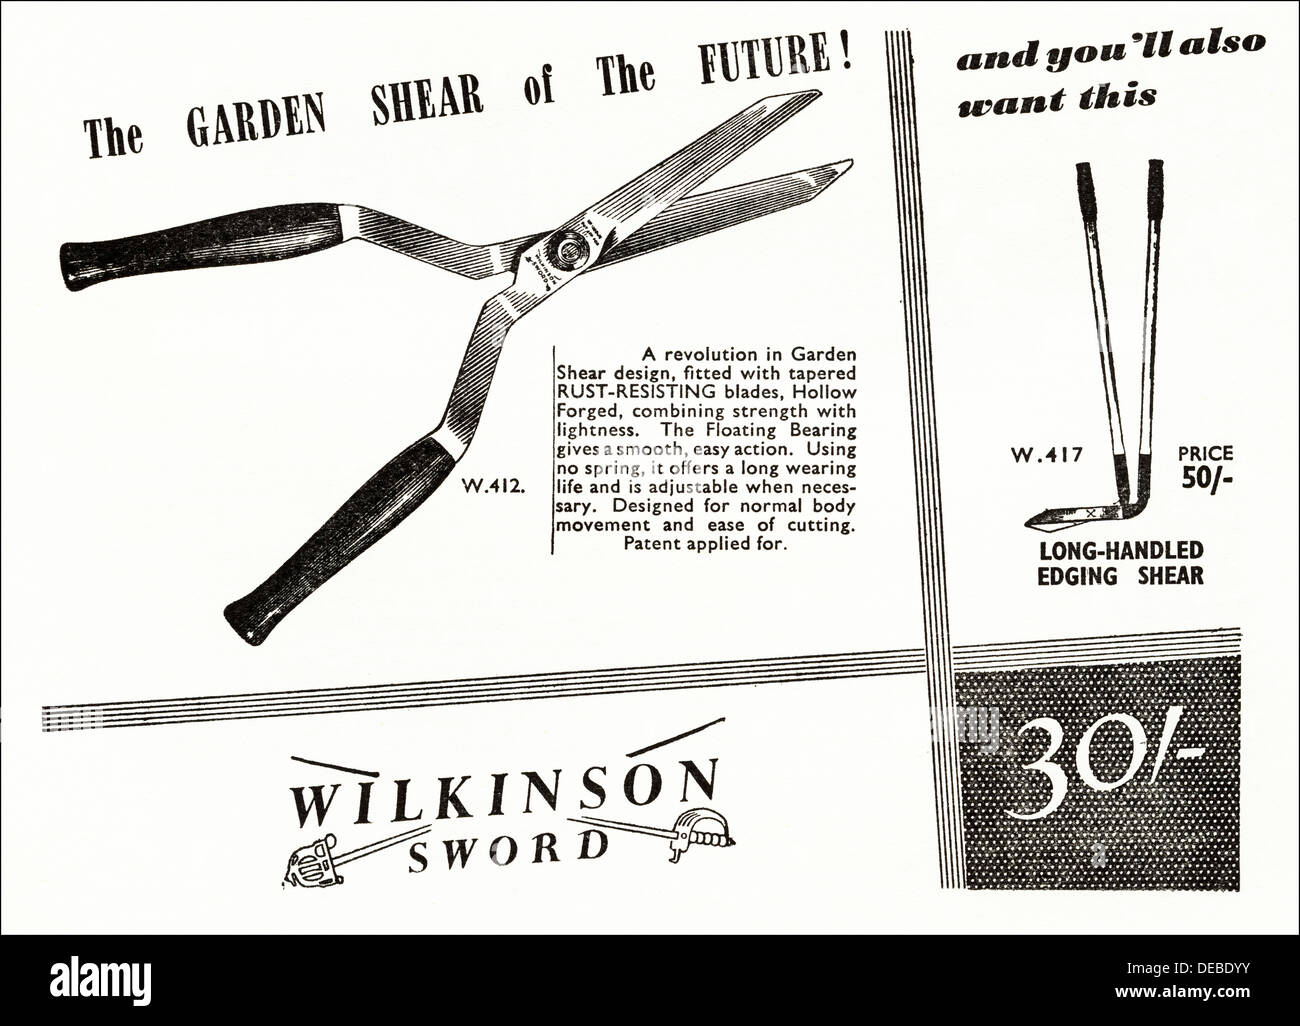 Werbung Werbung von WILKINSON SWORD Gartenschere Magazin Anzeige ca. 1954  Stockfotografie - Alamy